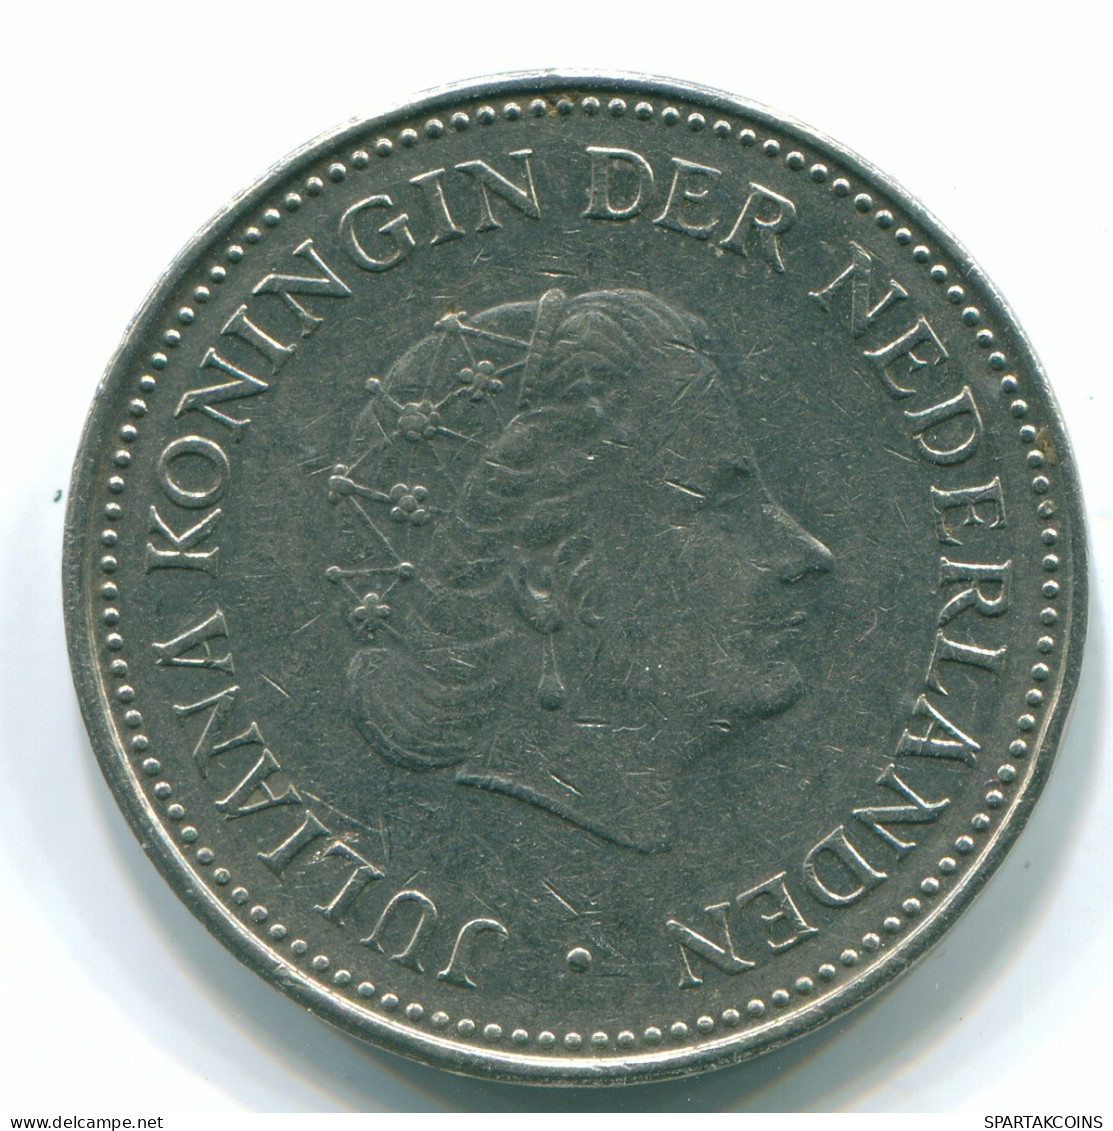 1 GULDEN 1971 NIEDERLÄNDISCHE ANTILLEN Nickel Koloniale Münze #S11939.D.A - Netherlands Antilles